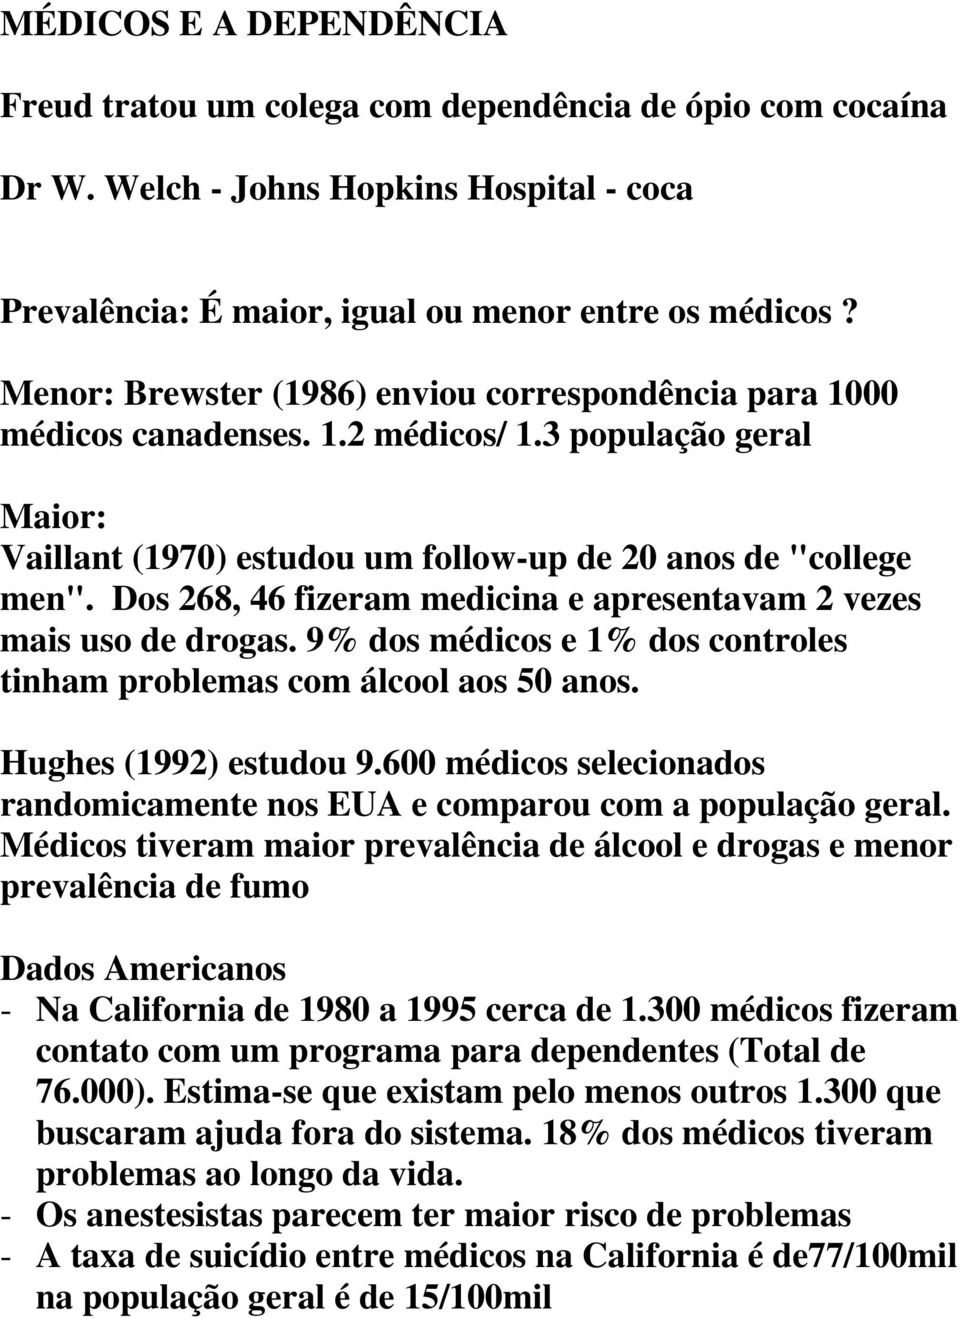 Dos 268, 46 fizeram medicina e apresentavam 2 vezes mais uso de drogas. 9% dos médicos e 1% dos controles tinham problemas com álcool aos 50 anos. Hughes (1992) estudou 9.